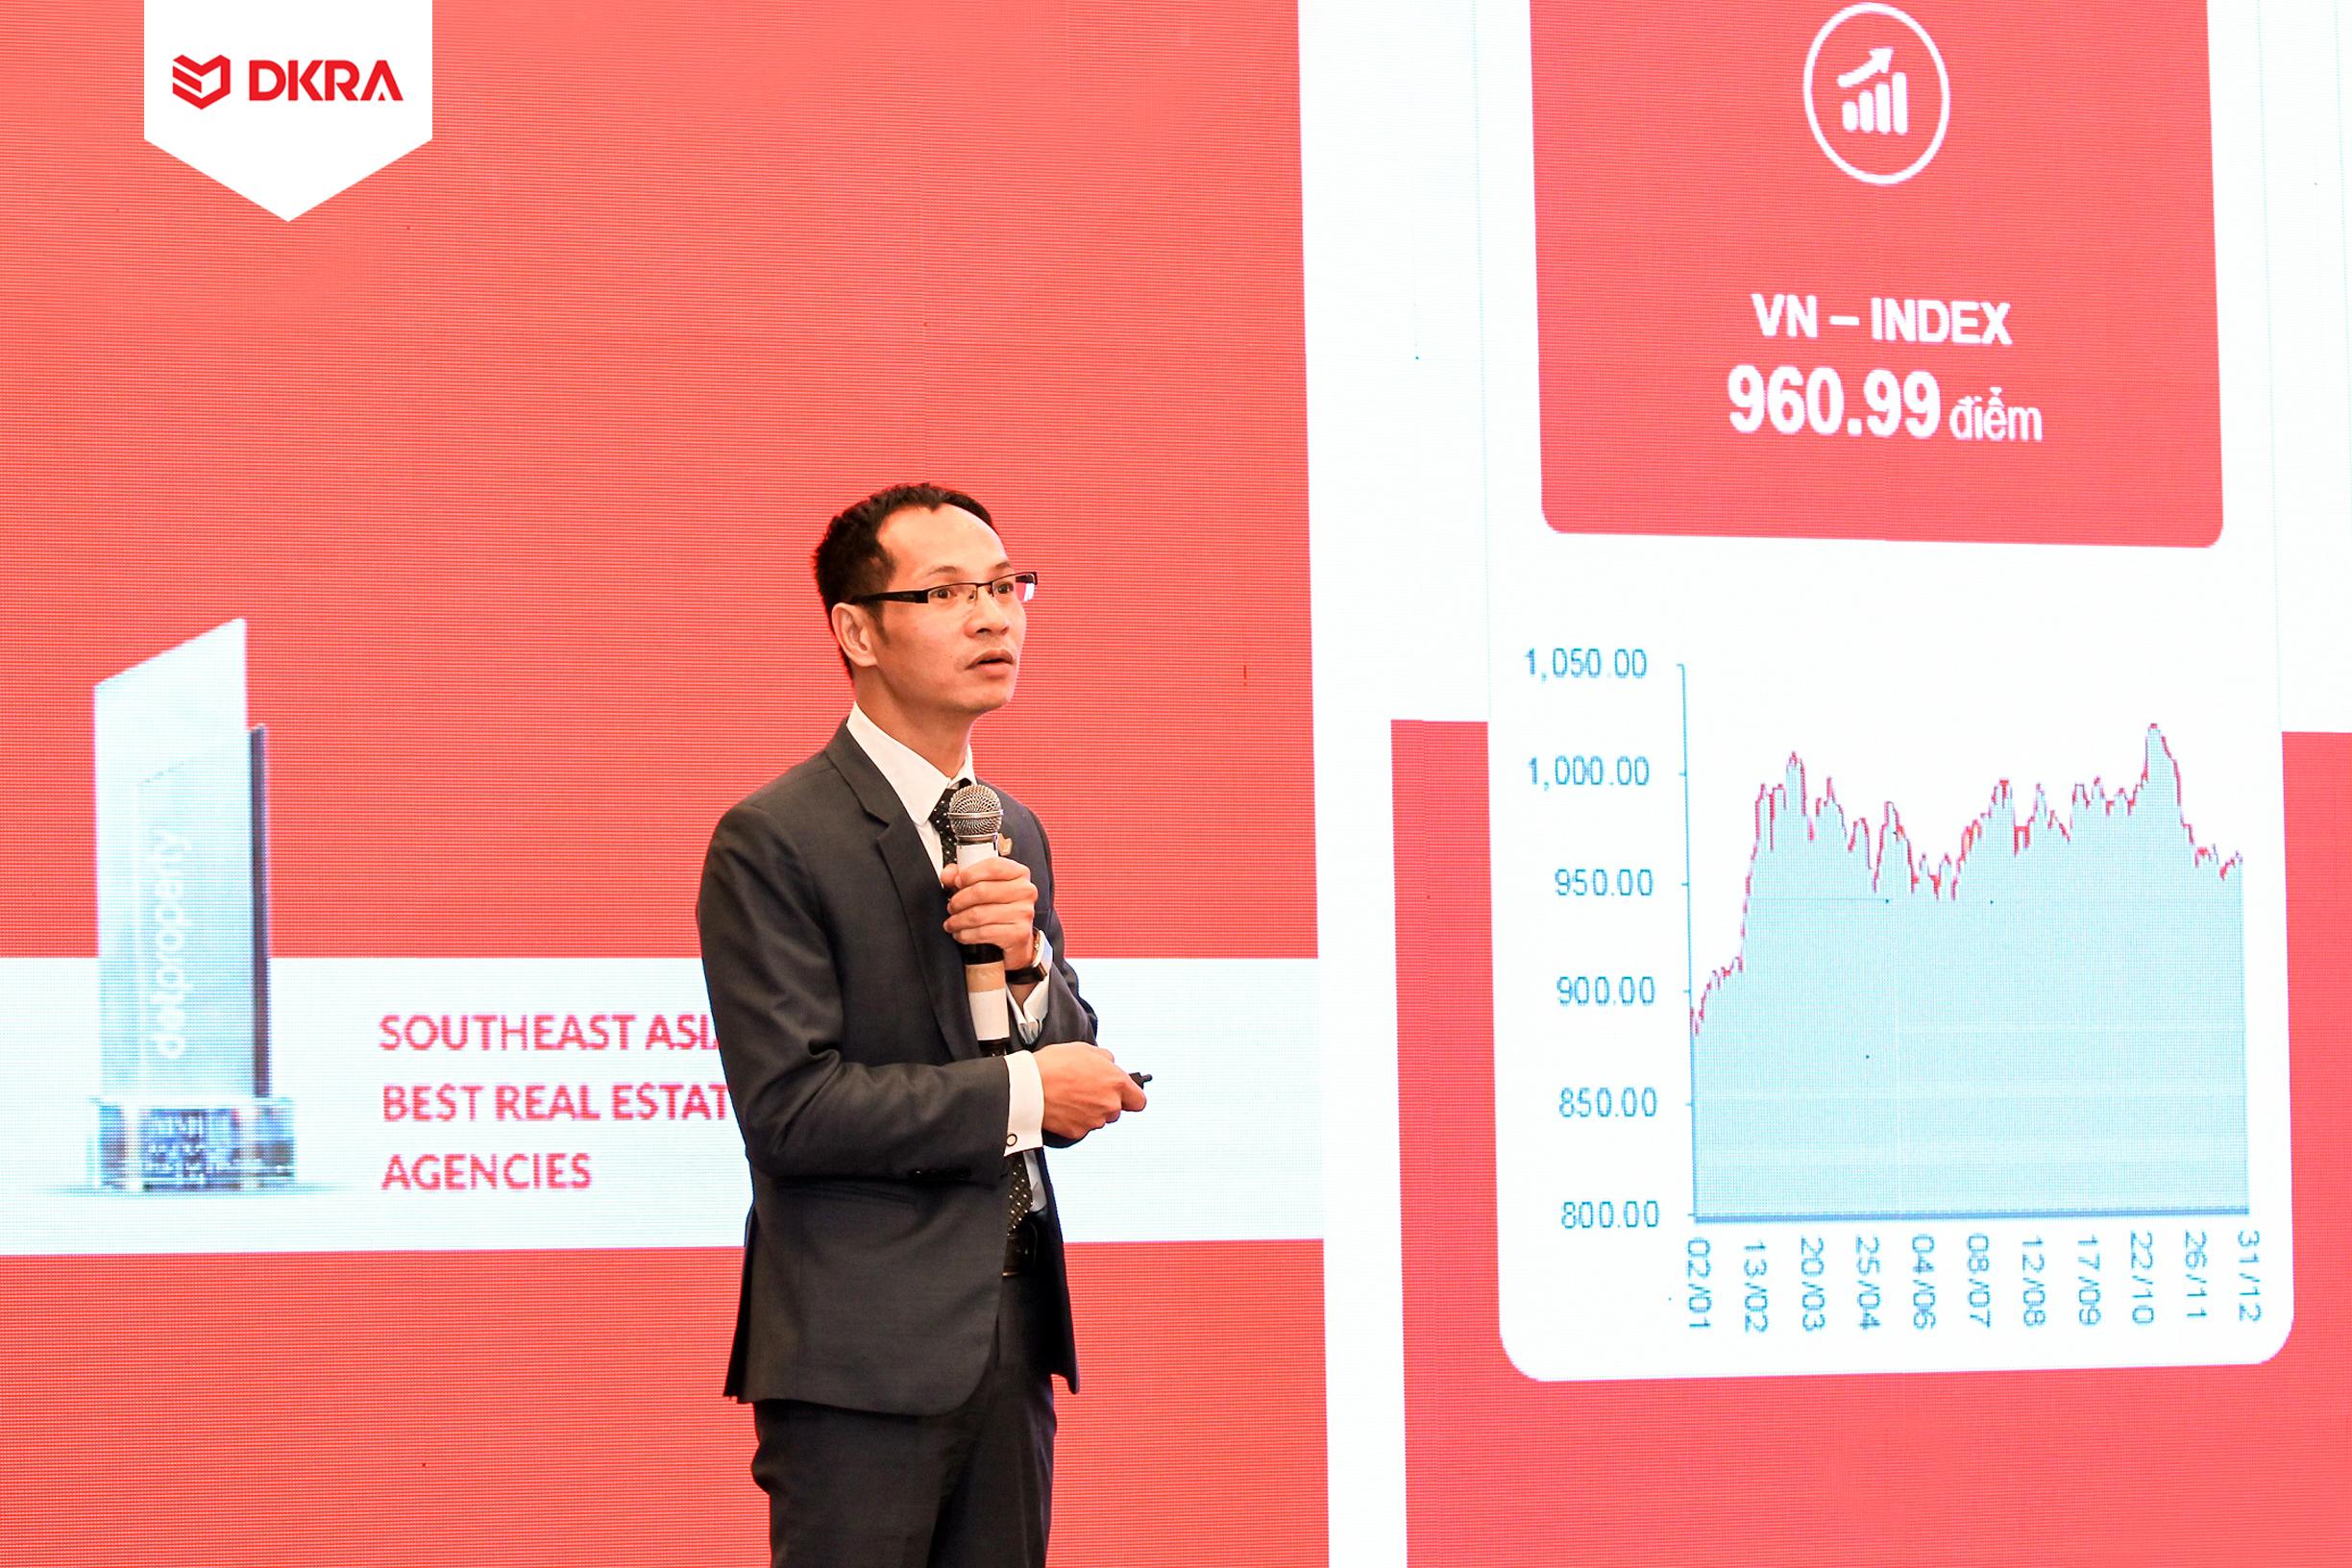 Ông Nguyễn Hoàng - Giám đốc bộ phận R&D DKRA Vietnam trình bày diễn biến thị trường bất động sản nhà ở TP.HCM năm 2019.